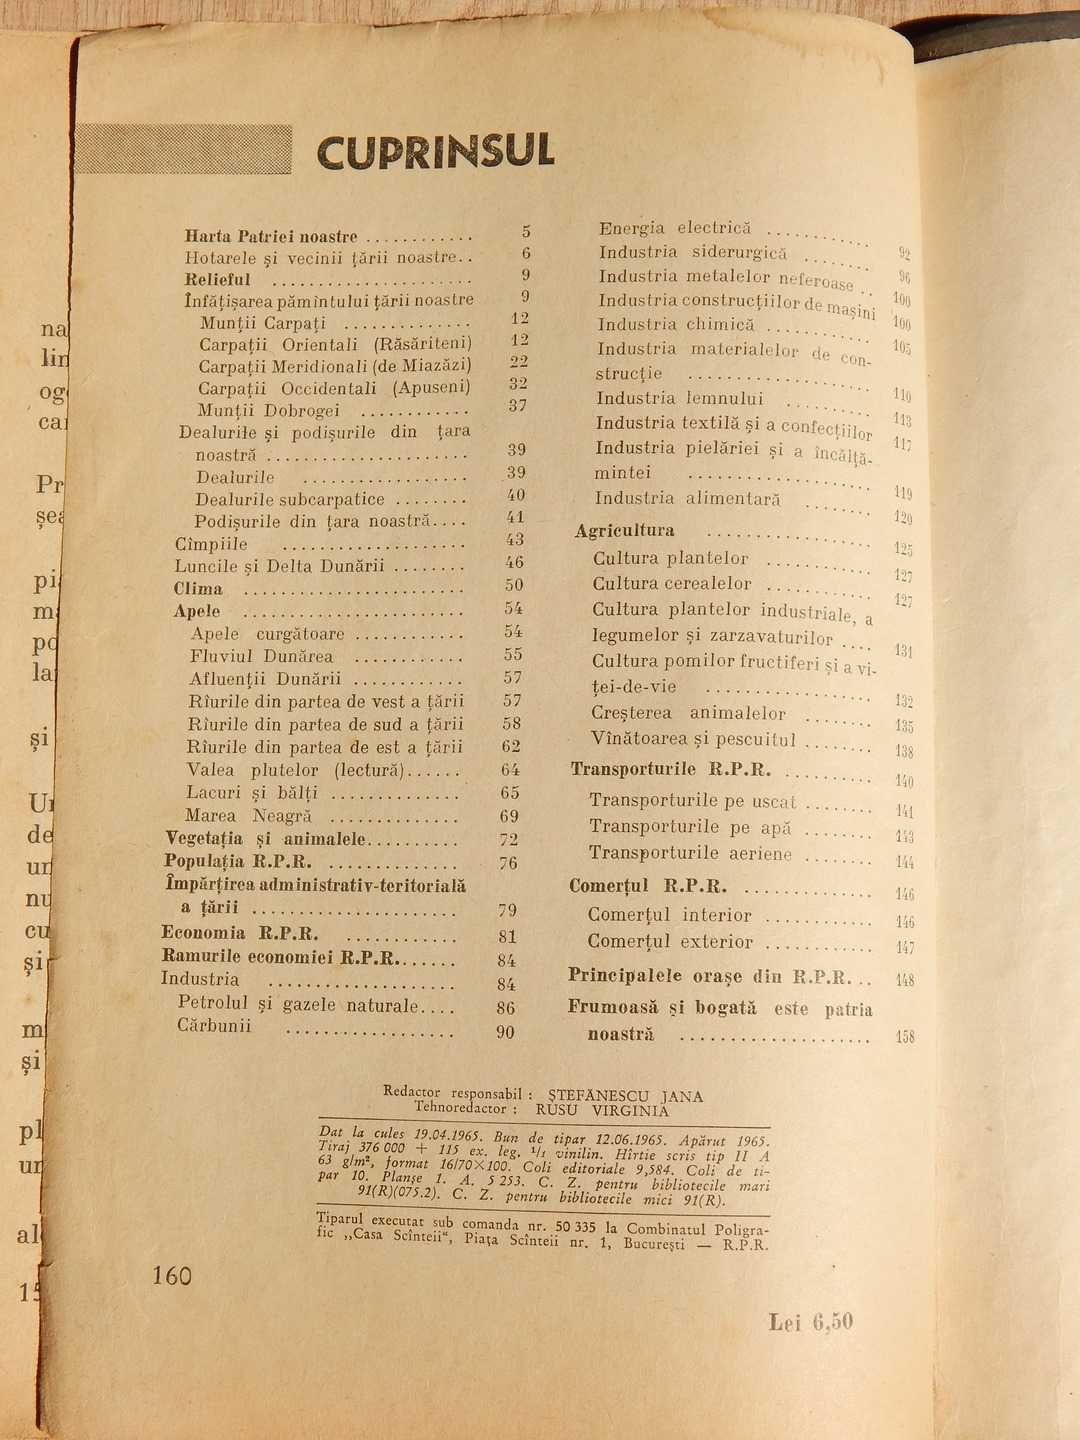 Manual geografie IV Iancu Negulescu Ed. Didactica si Pedagogica 1965